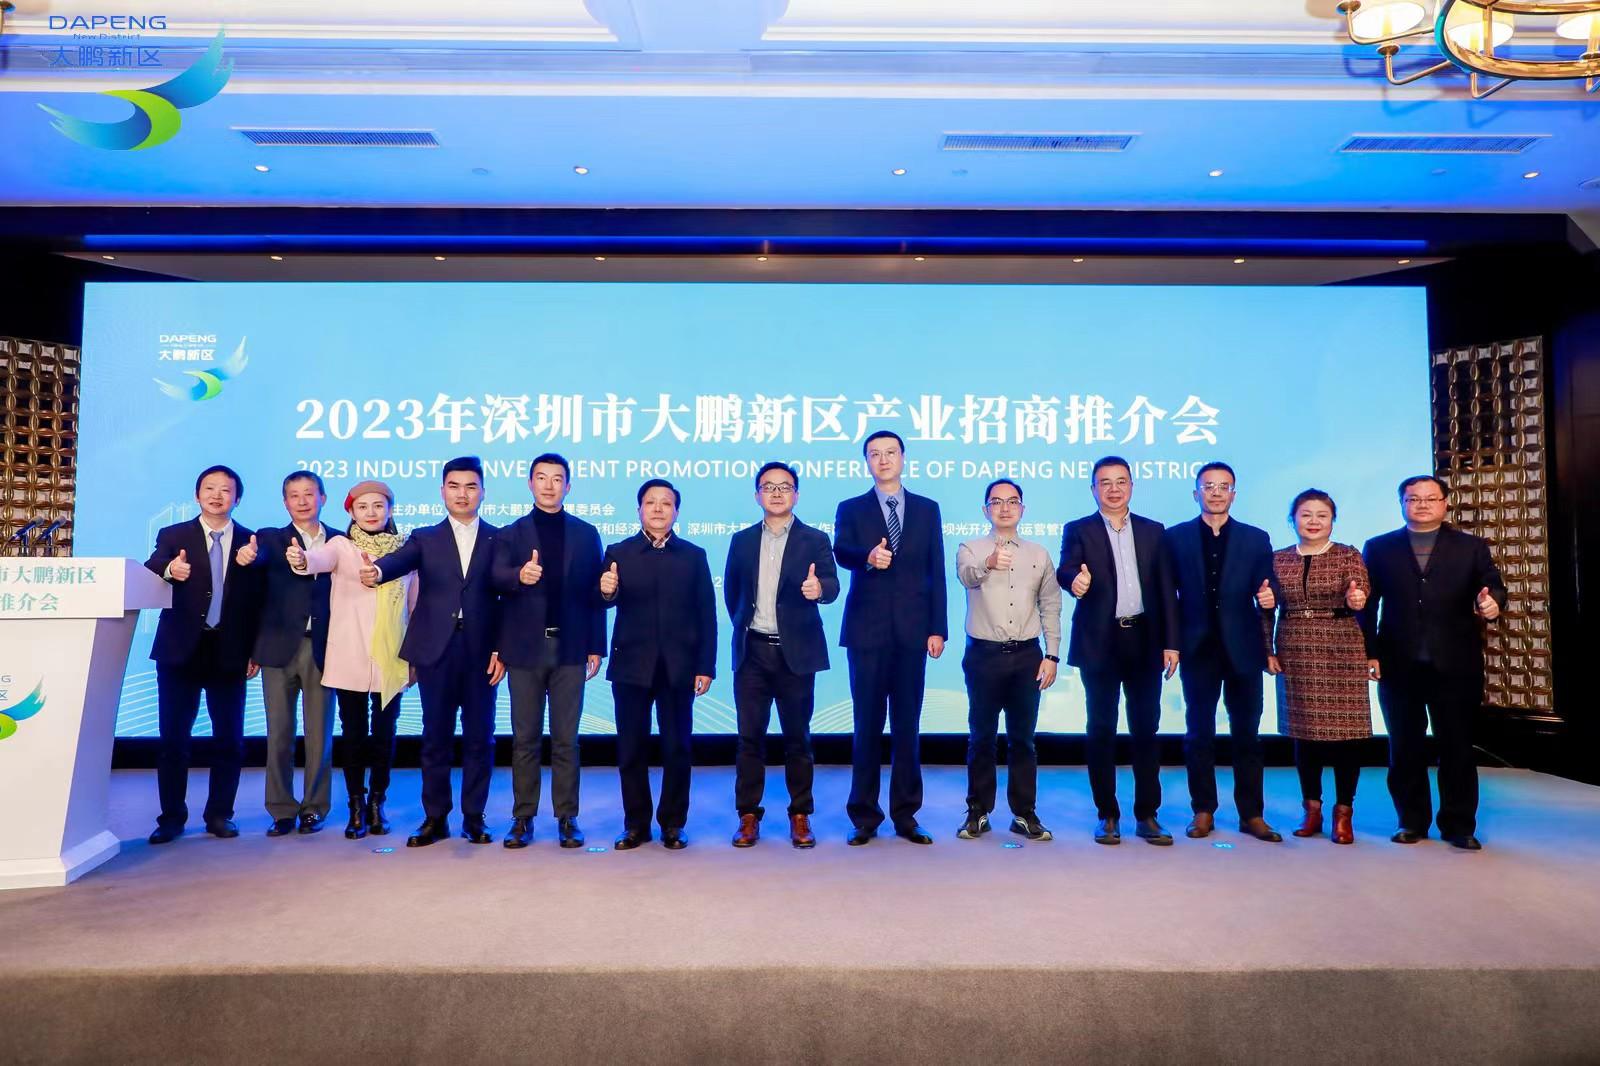 深圳大鹏新区西安专场招商大会签约8家企业、机构